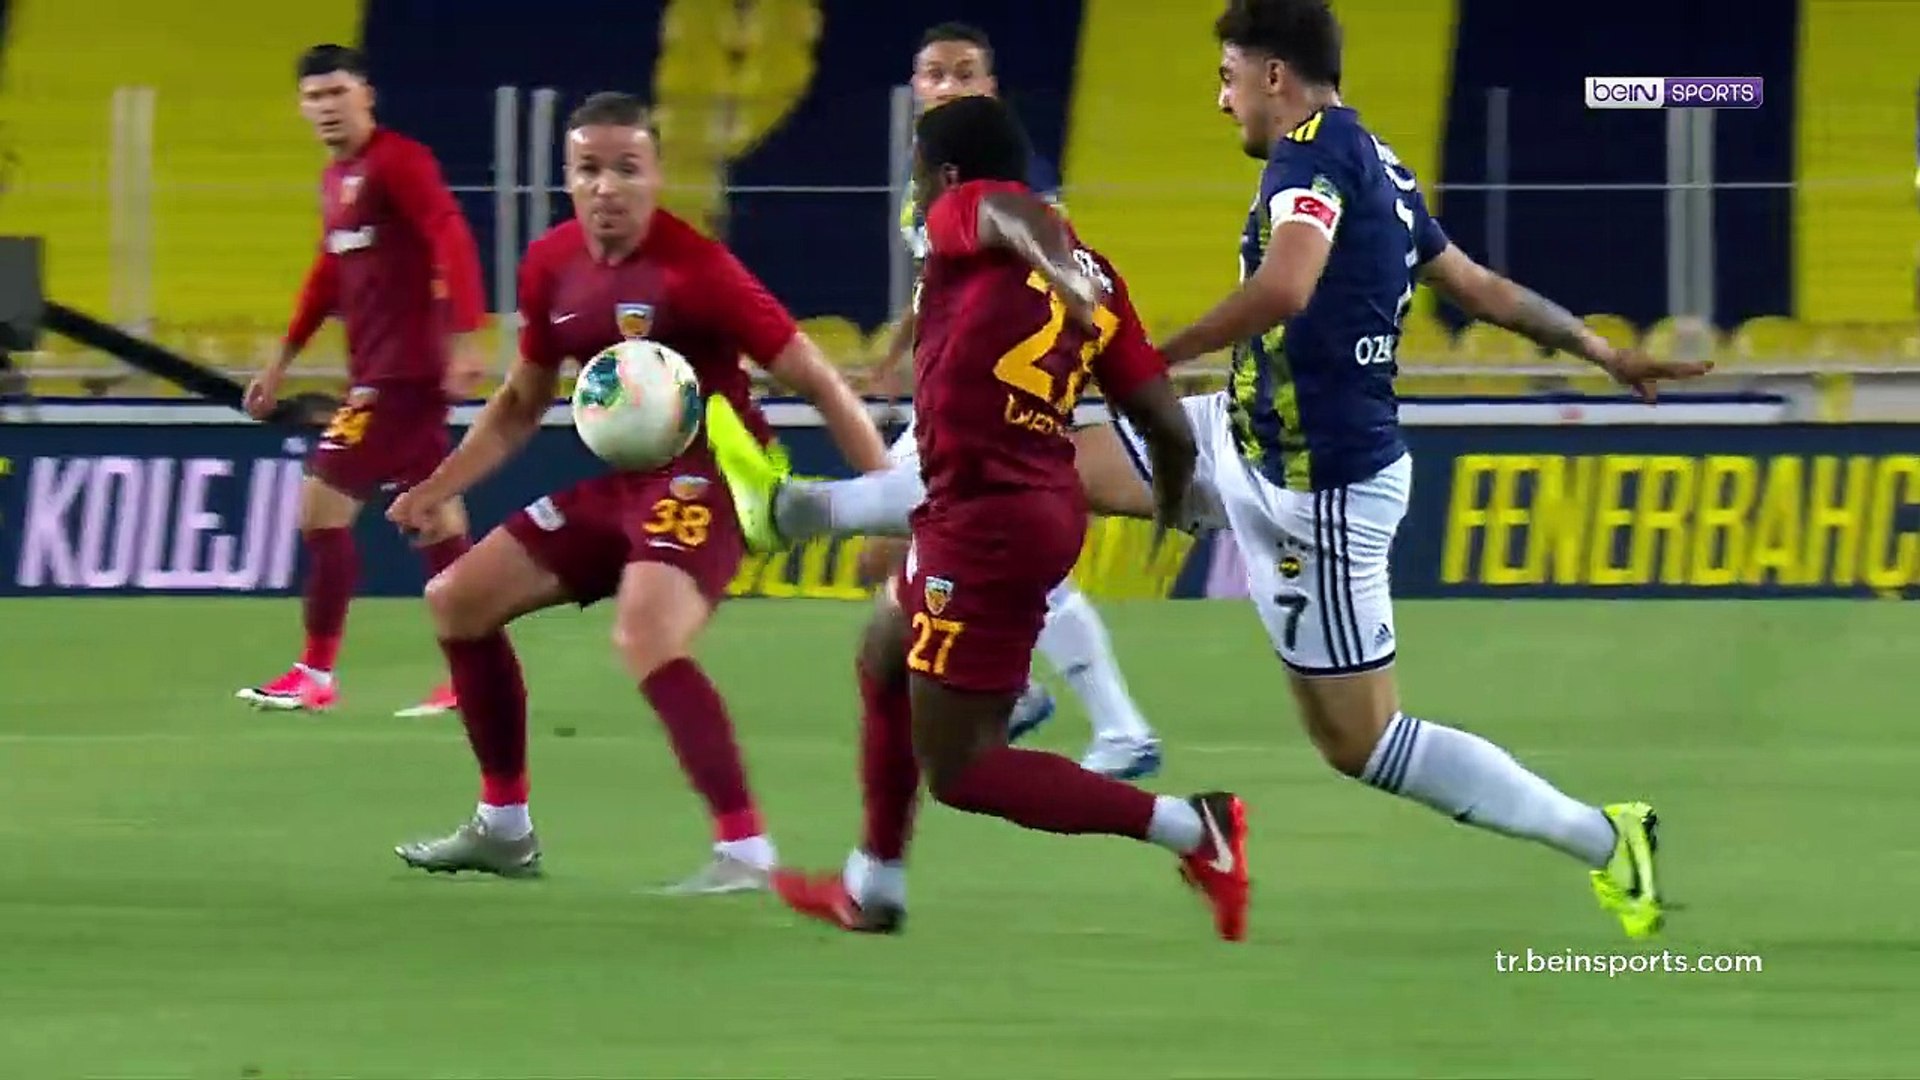 Fenerbahçe 2-1 Hes Kablo Kayserispor Maçın Geniş Özeti ve Golleri -  Dailymotion Video